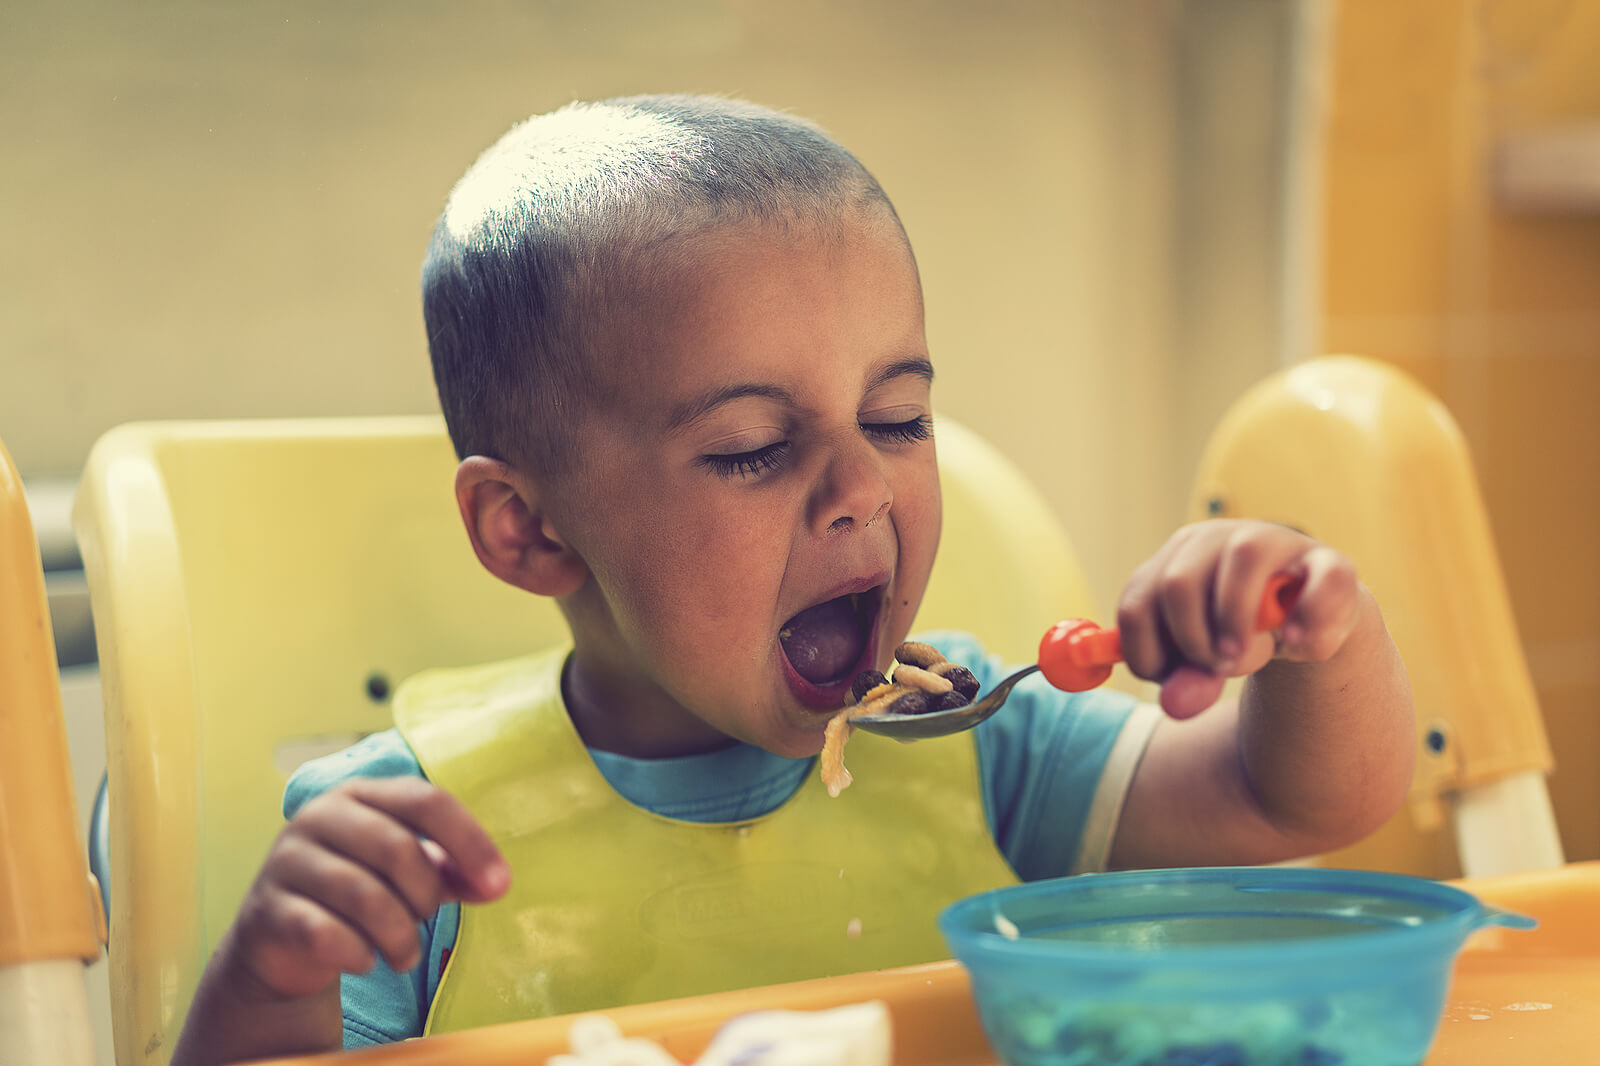 Niño de 2 años comiendo con cuchara él solo.